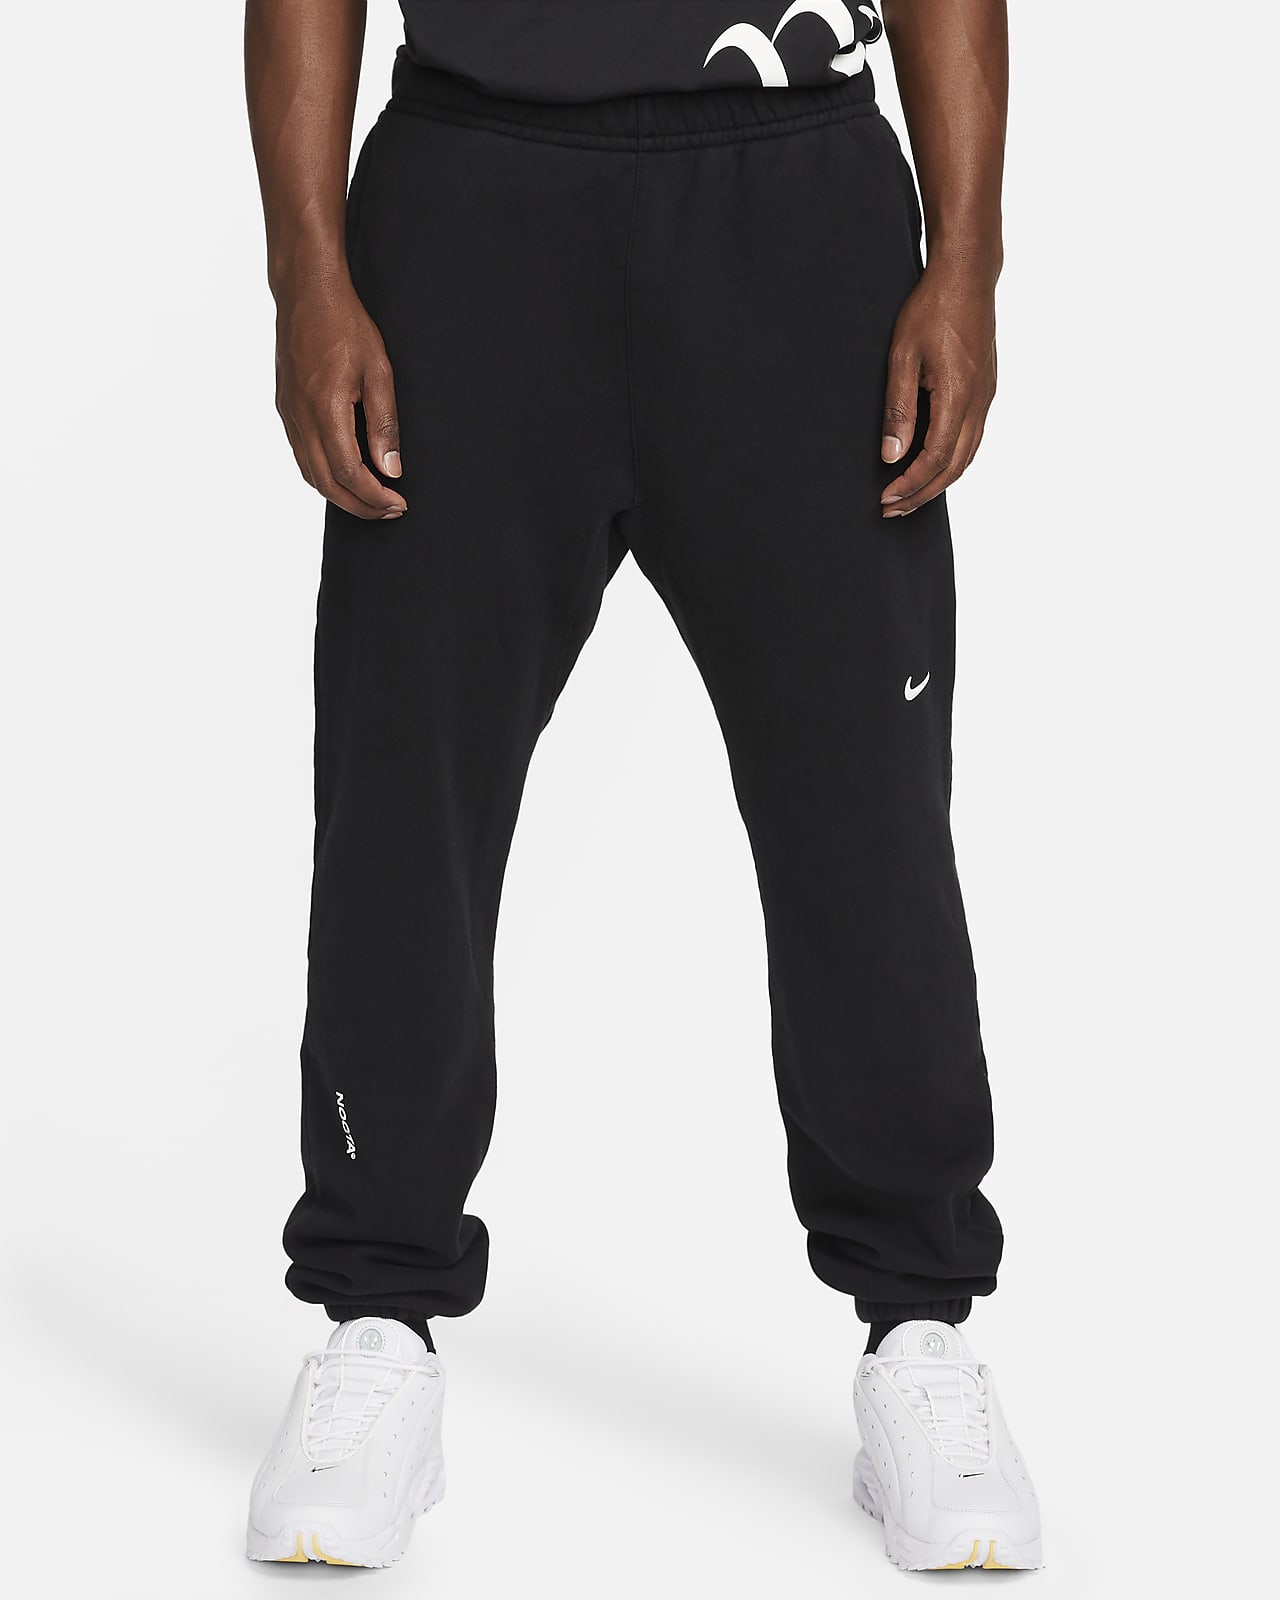 Mサイズ NOCTA x Nike Track Pants Black 新品メンズ